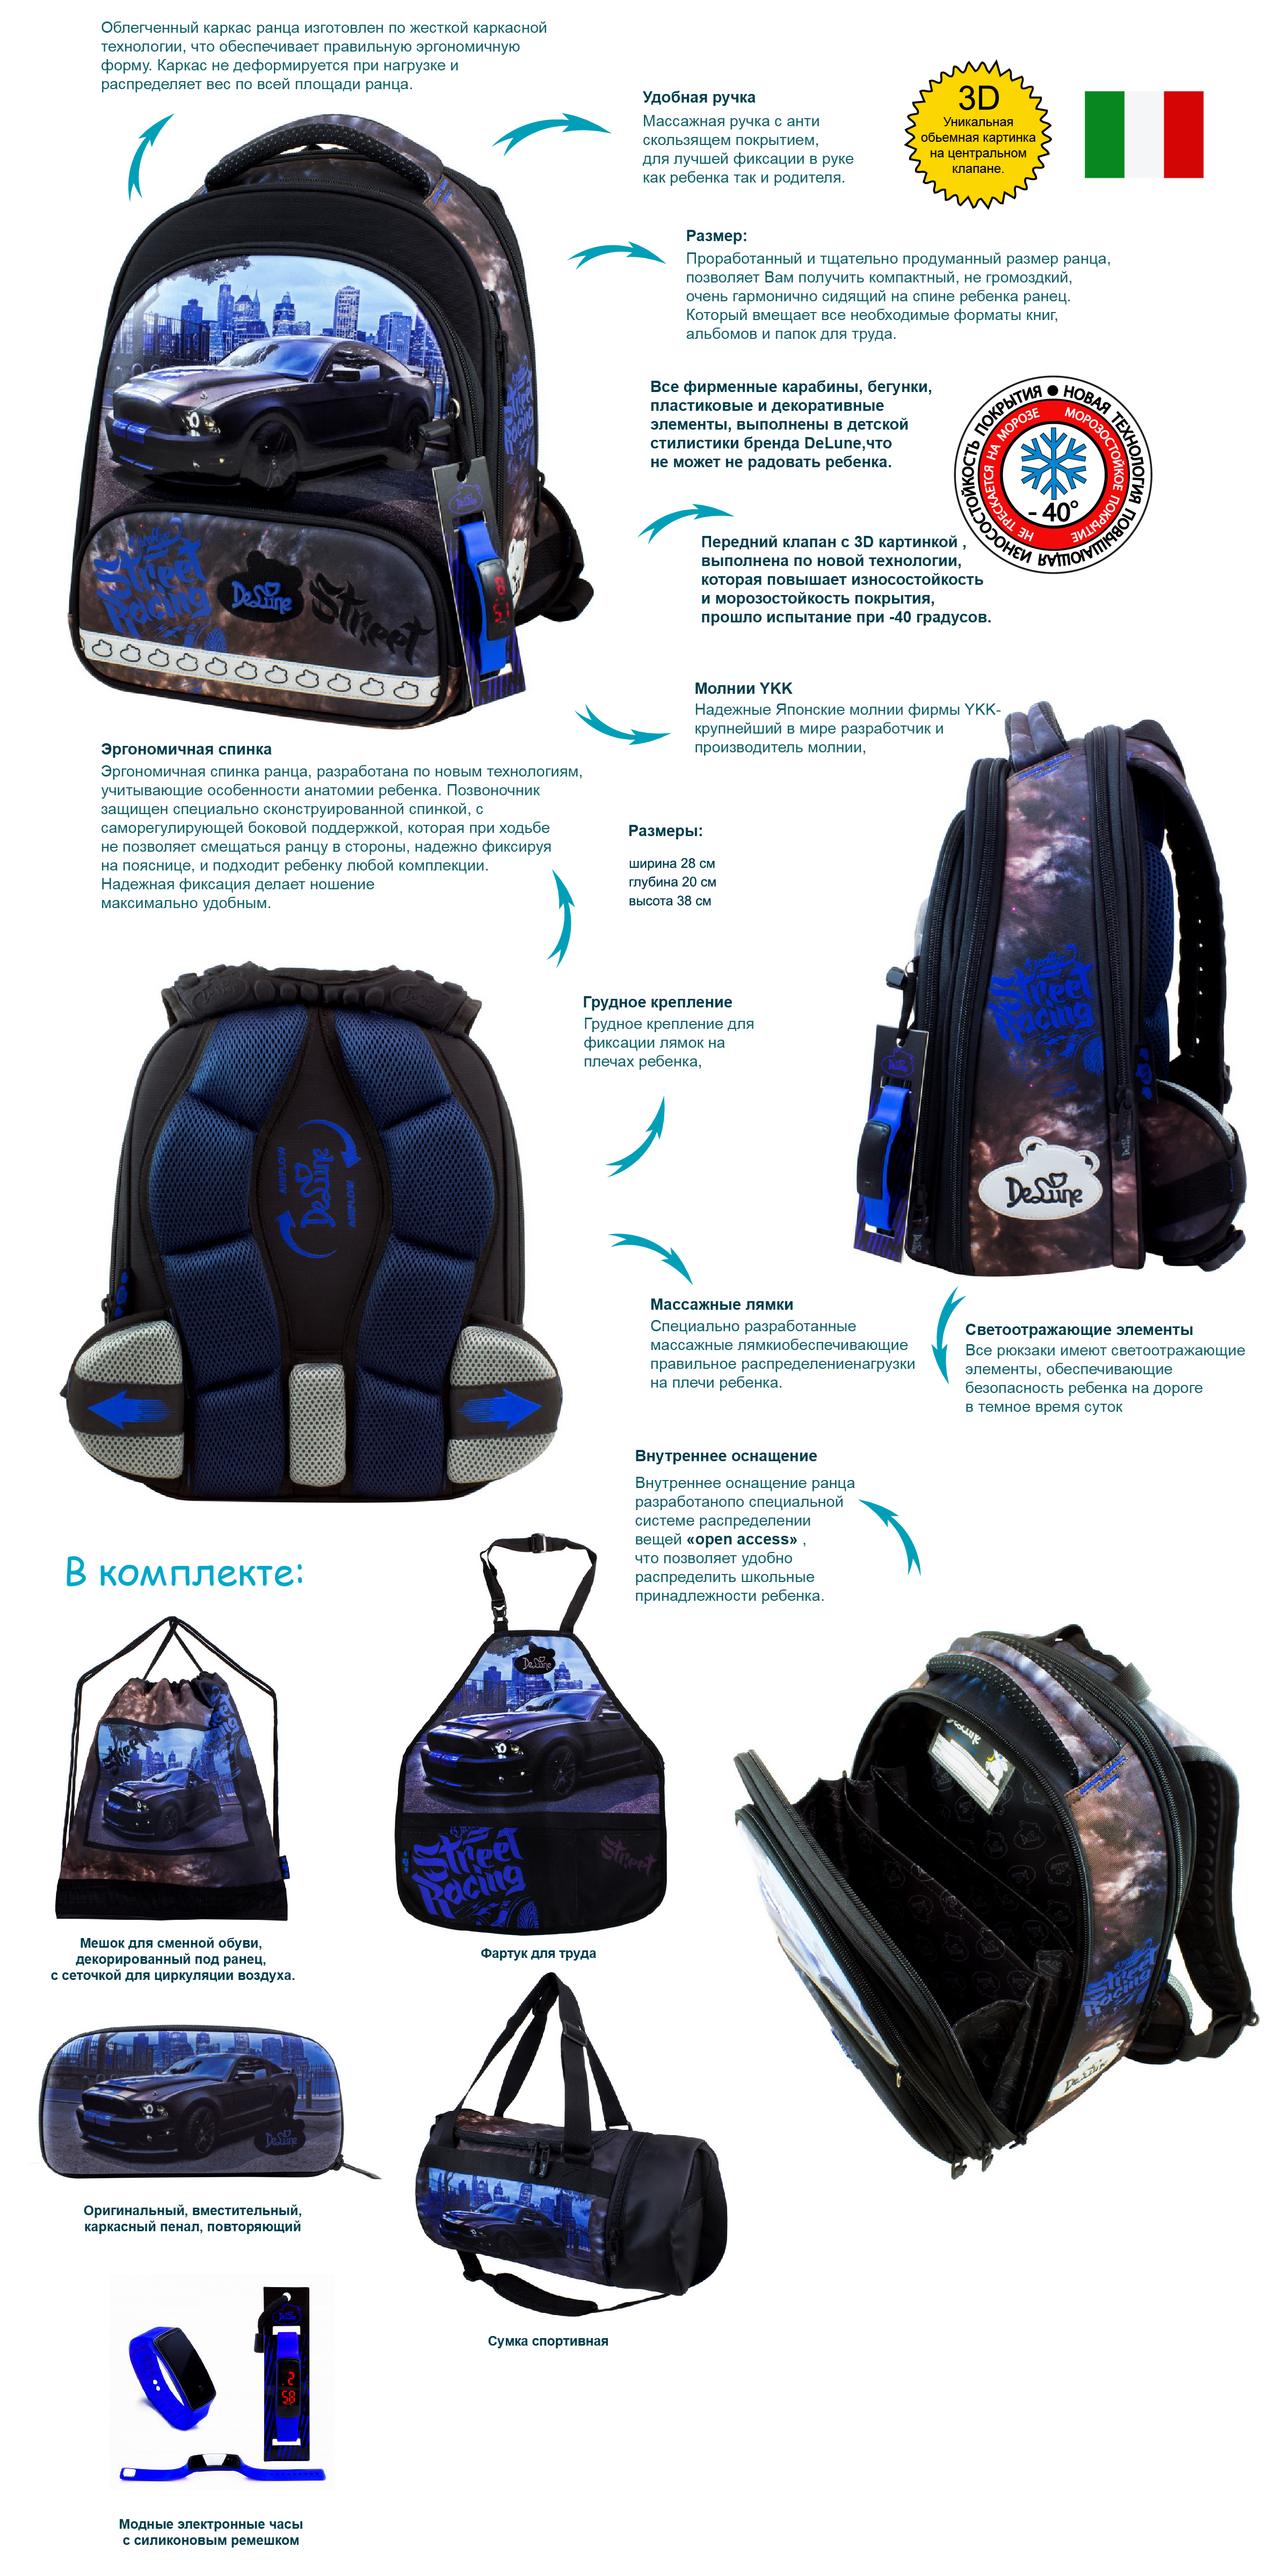 Обзор Ранец DeLune Full-set 9-126 + мешок + жесткий пенал + спортивная сумка + фартук для труда + часы